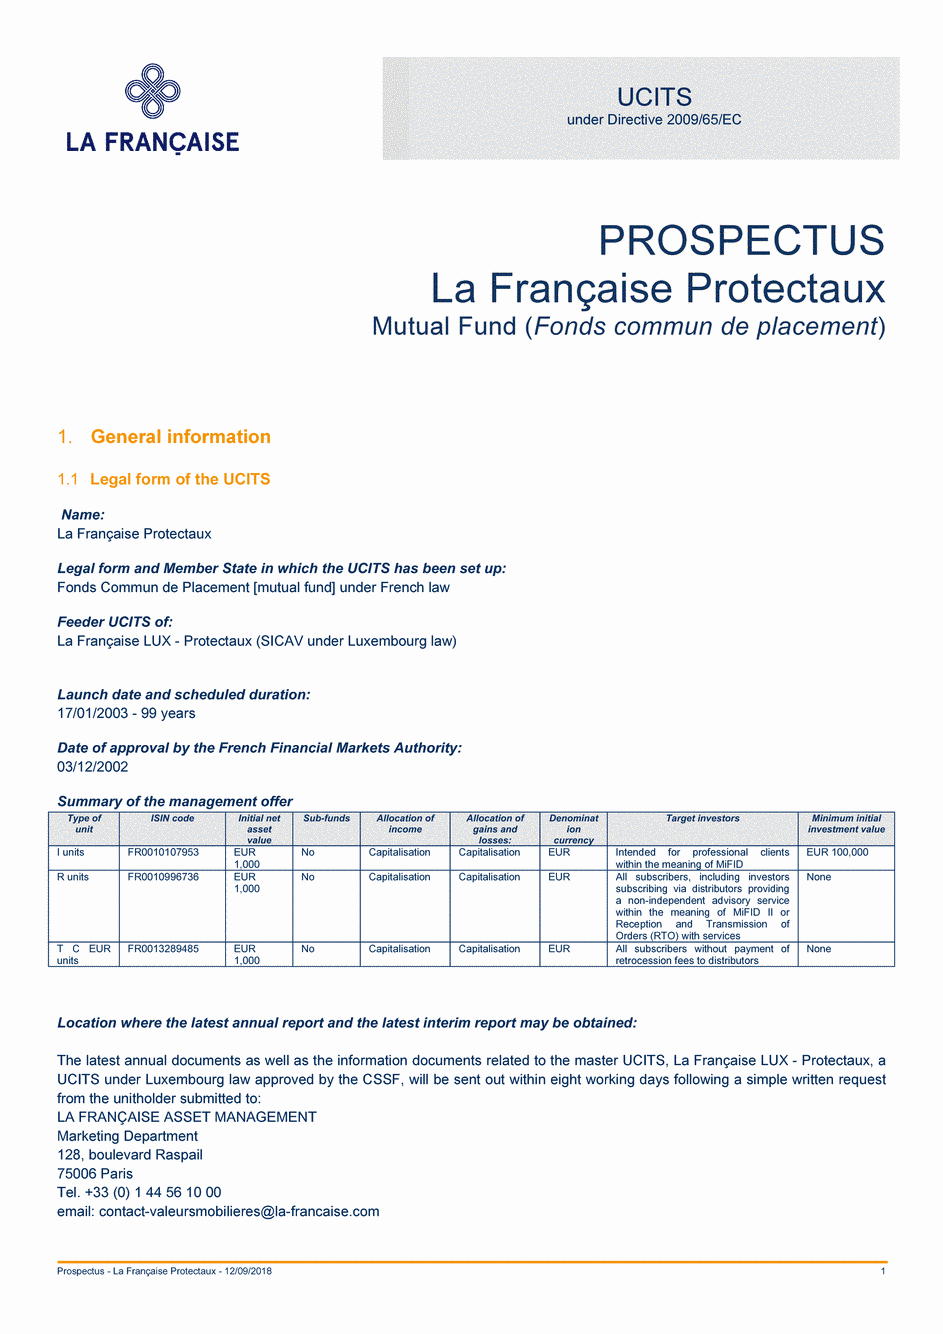 Prospectus La Française Protectaux - Part T C EUR - 12/09/2018 - Anglais